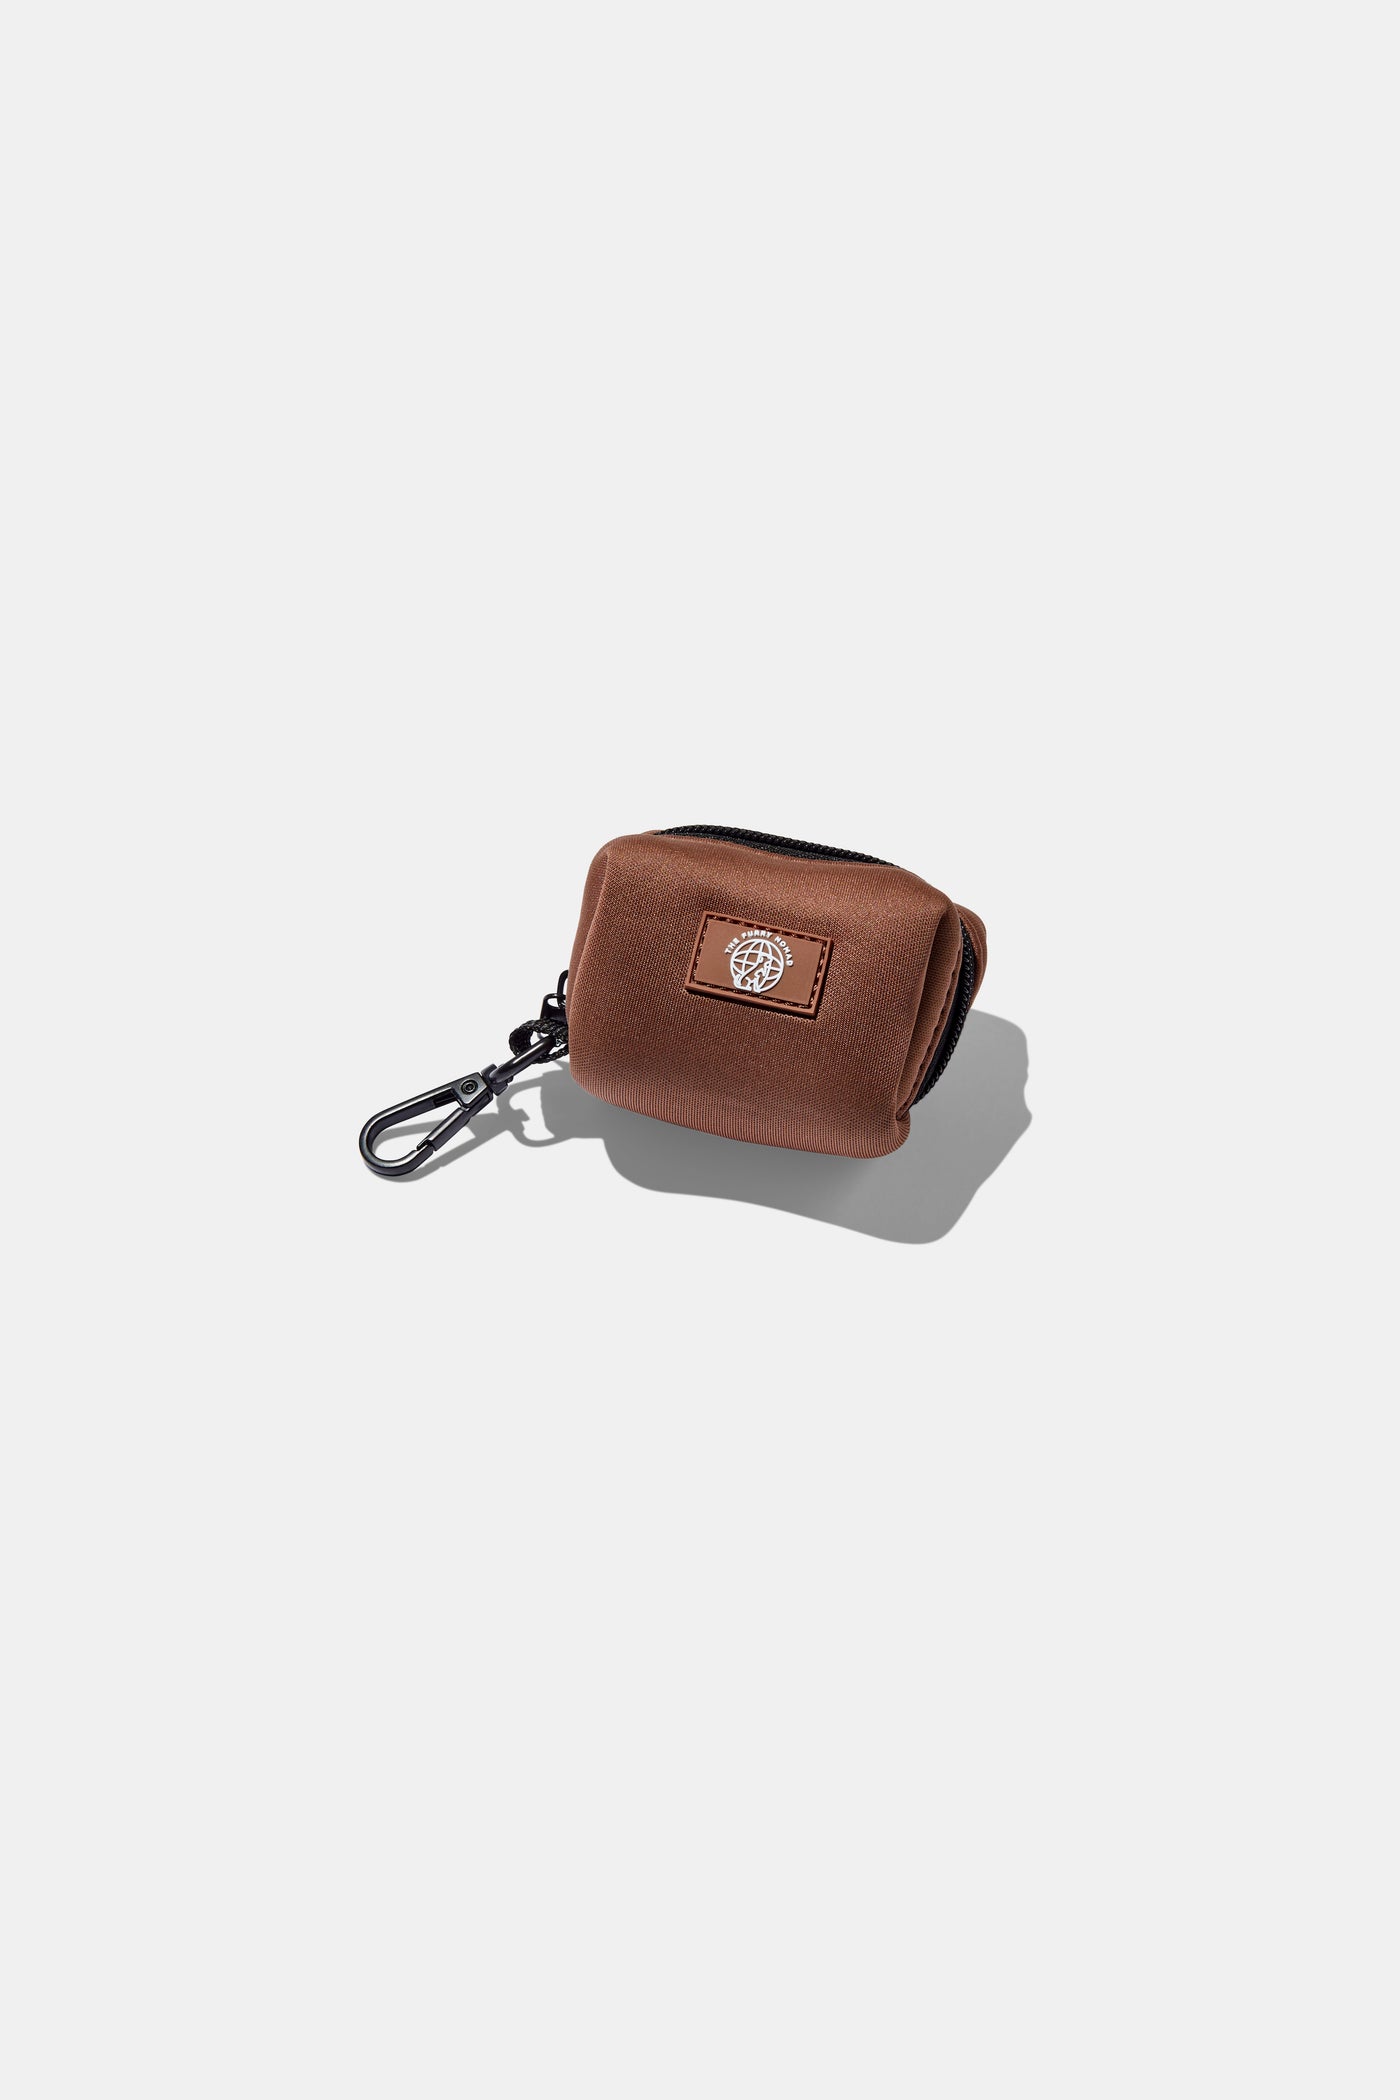 chocolate brown poop bag holder#color_chocolate-brown